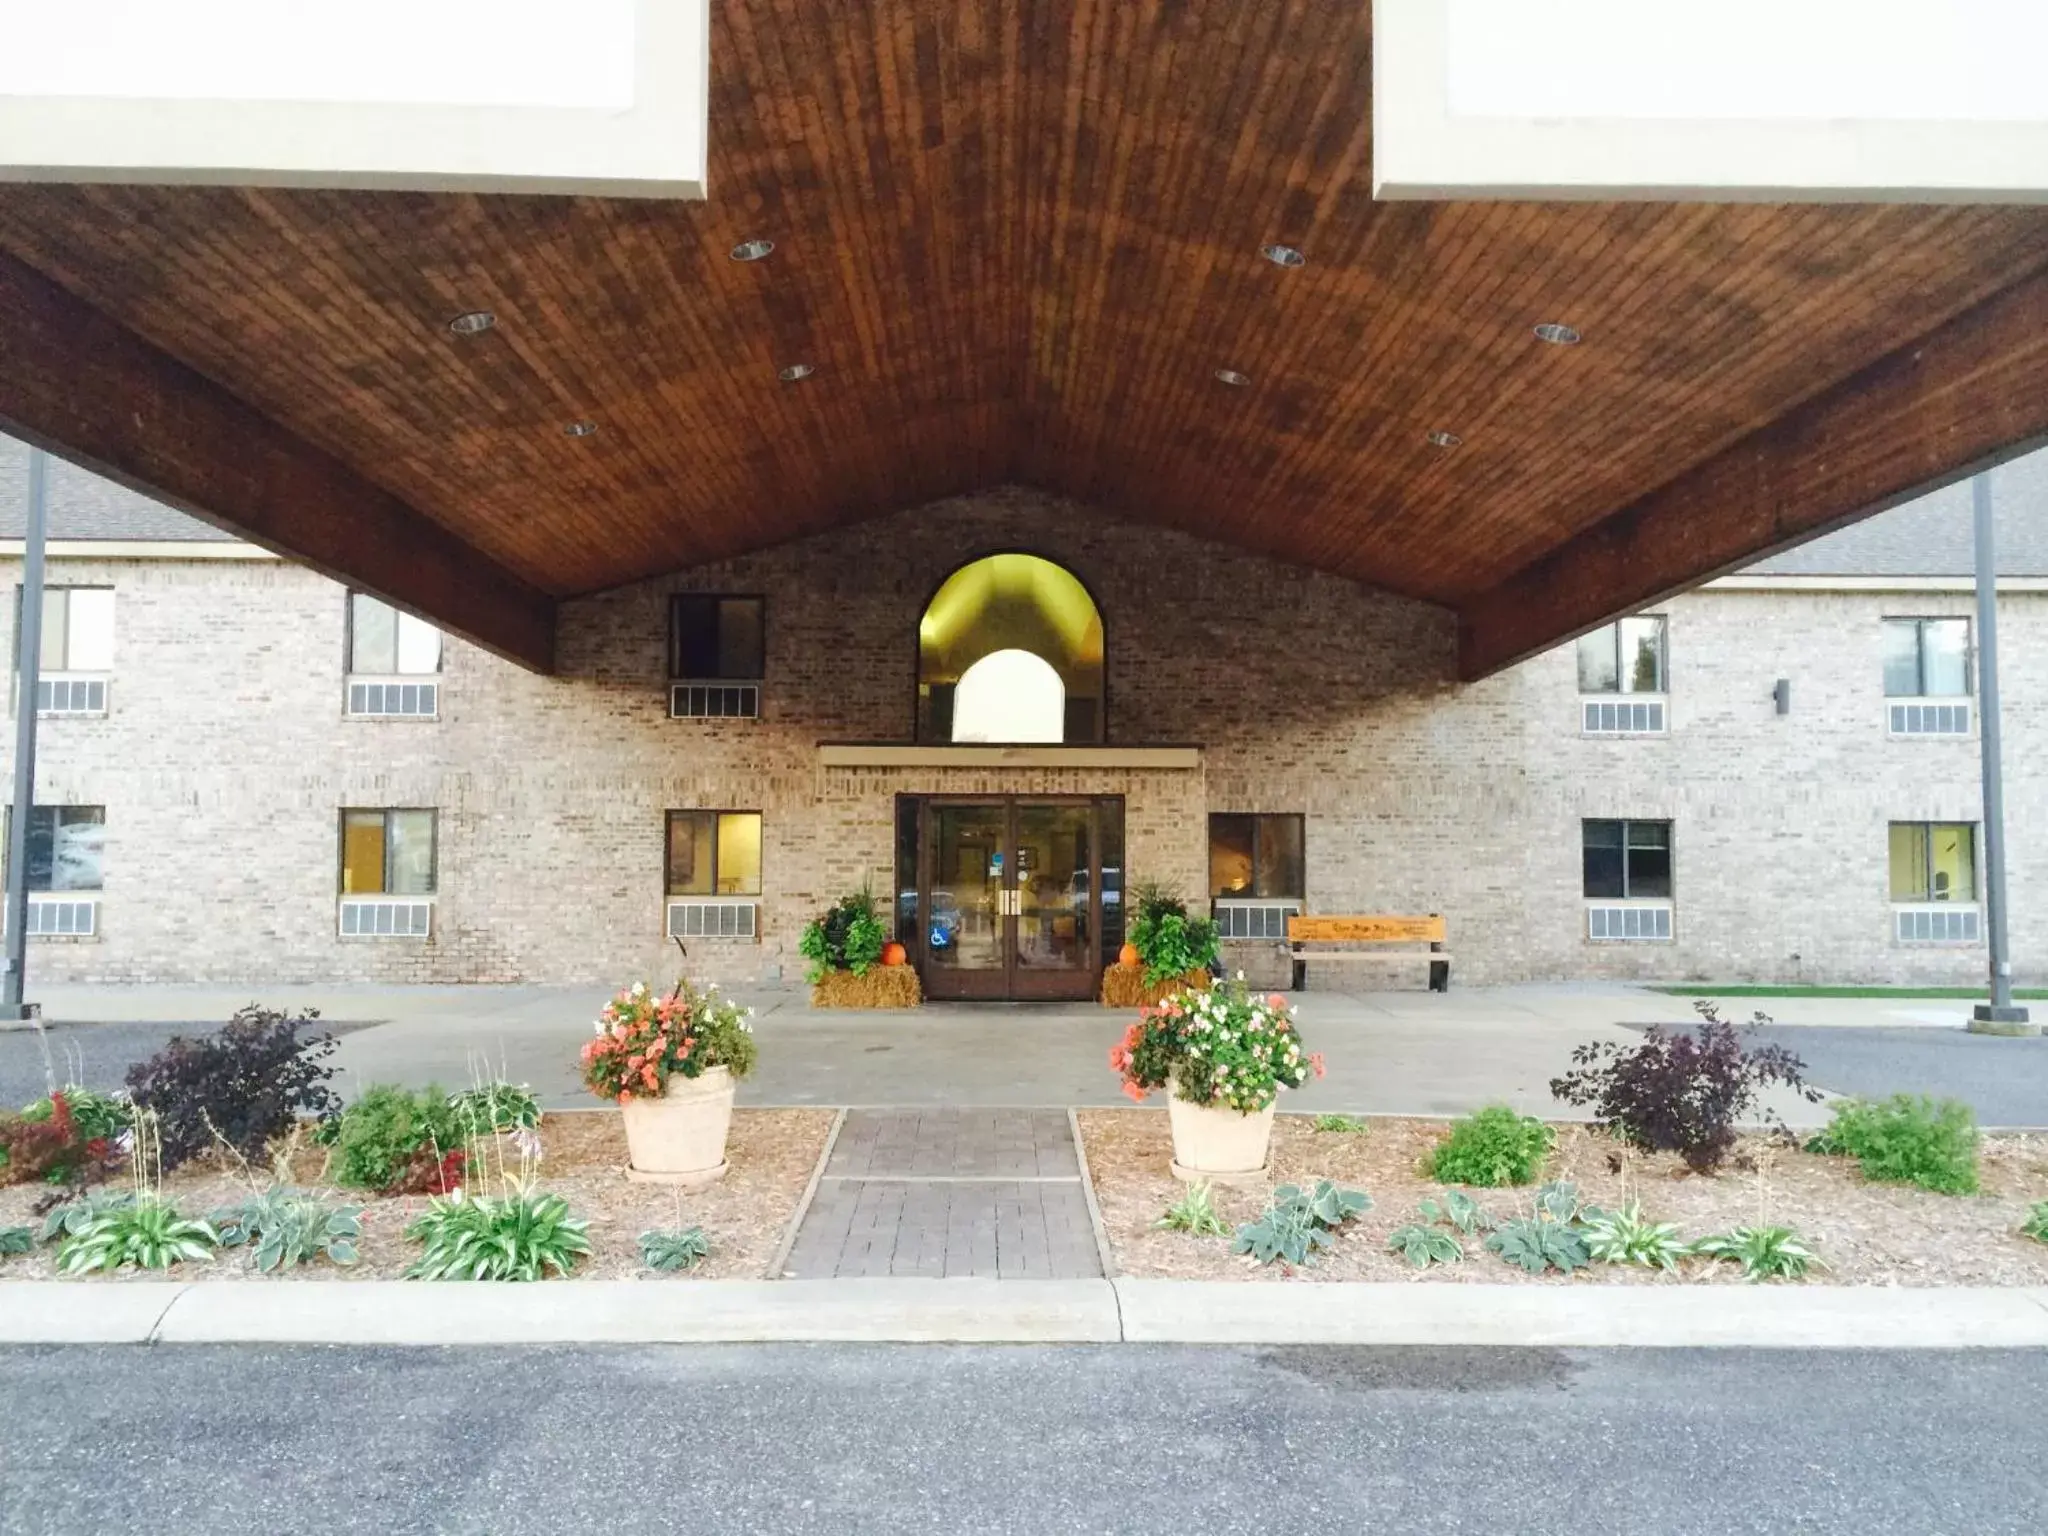 Facade/Entrance in All Seasons Resort